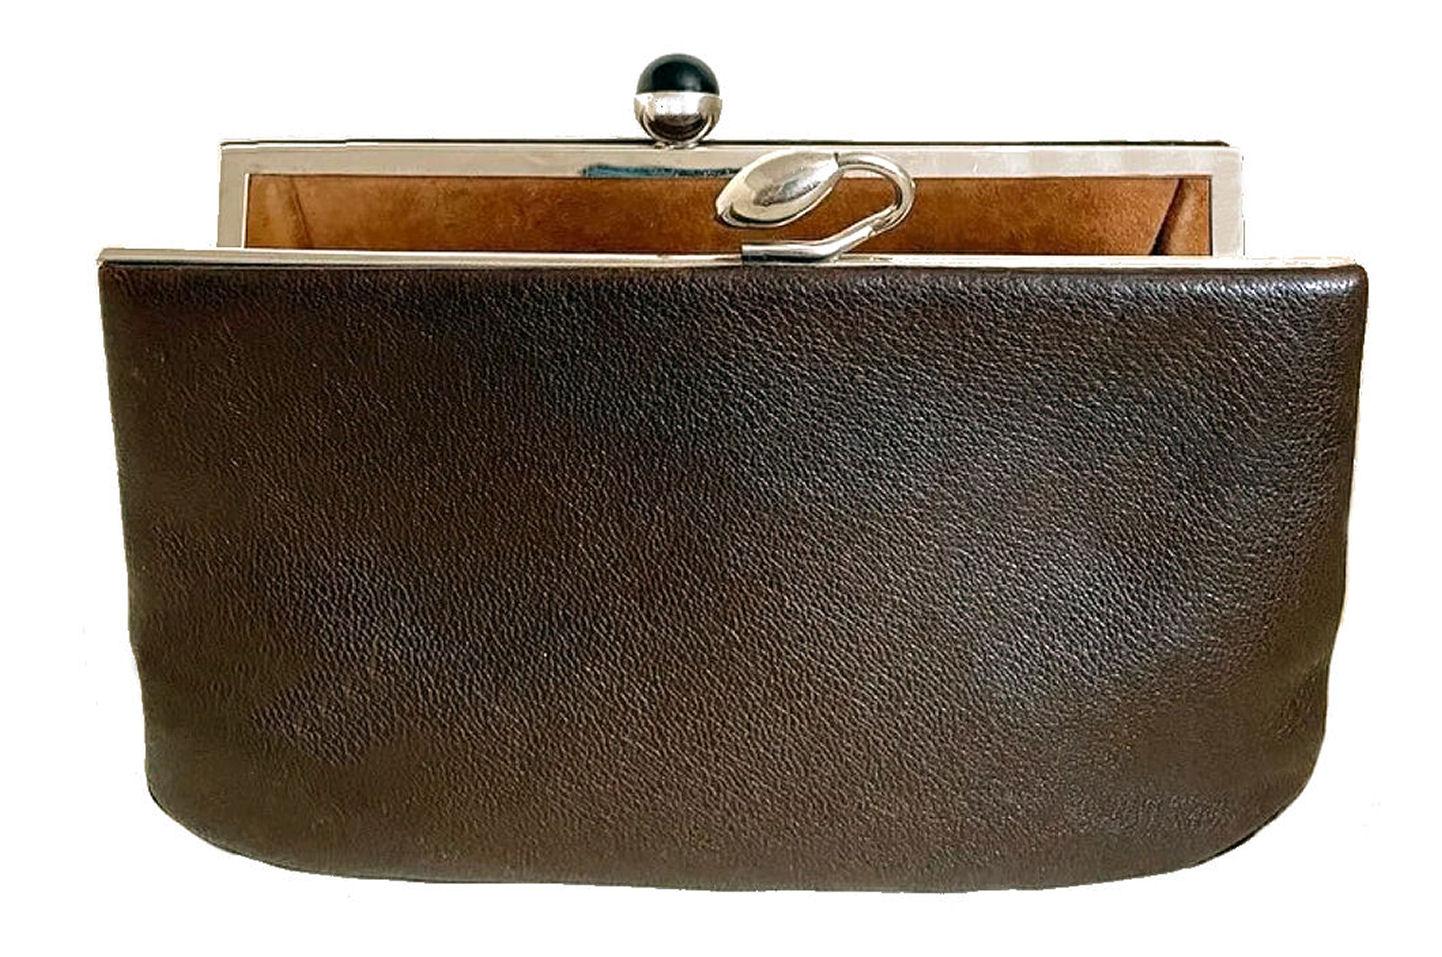 Art Deco Modernist Original Ladies Leather & Chrome Clutch bag Purse, c1930 For Sale 2